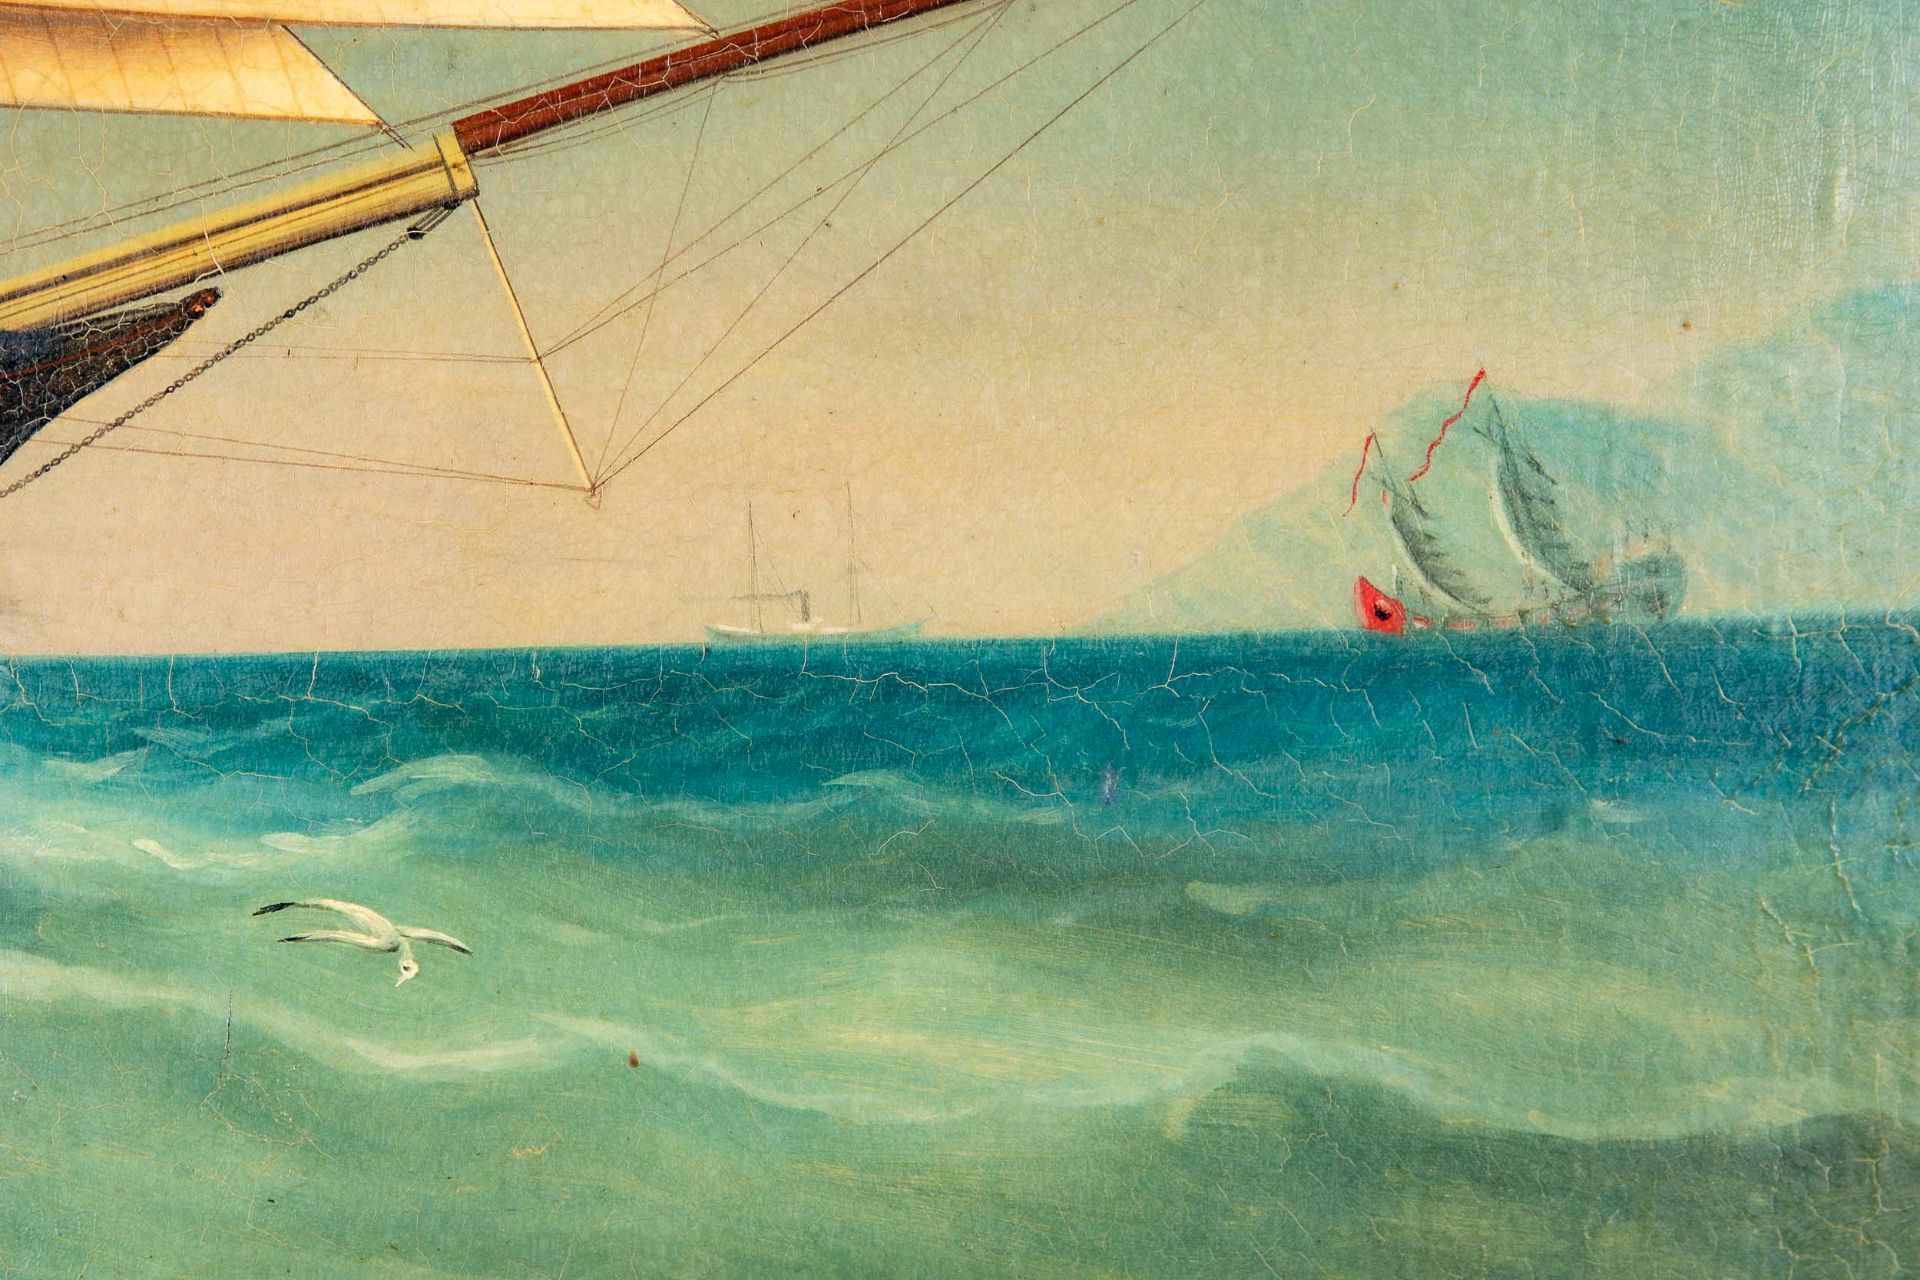 Kapitänsbild des Vollschiffes "Industrie" (1872 in Holland gebaut), qualitativ hochwertiges Gemälde - Image 18 of 24